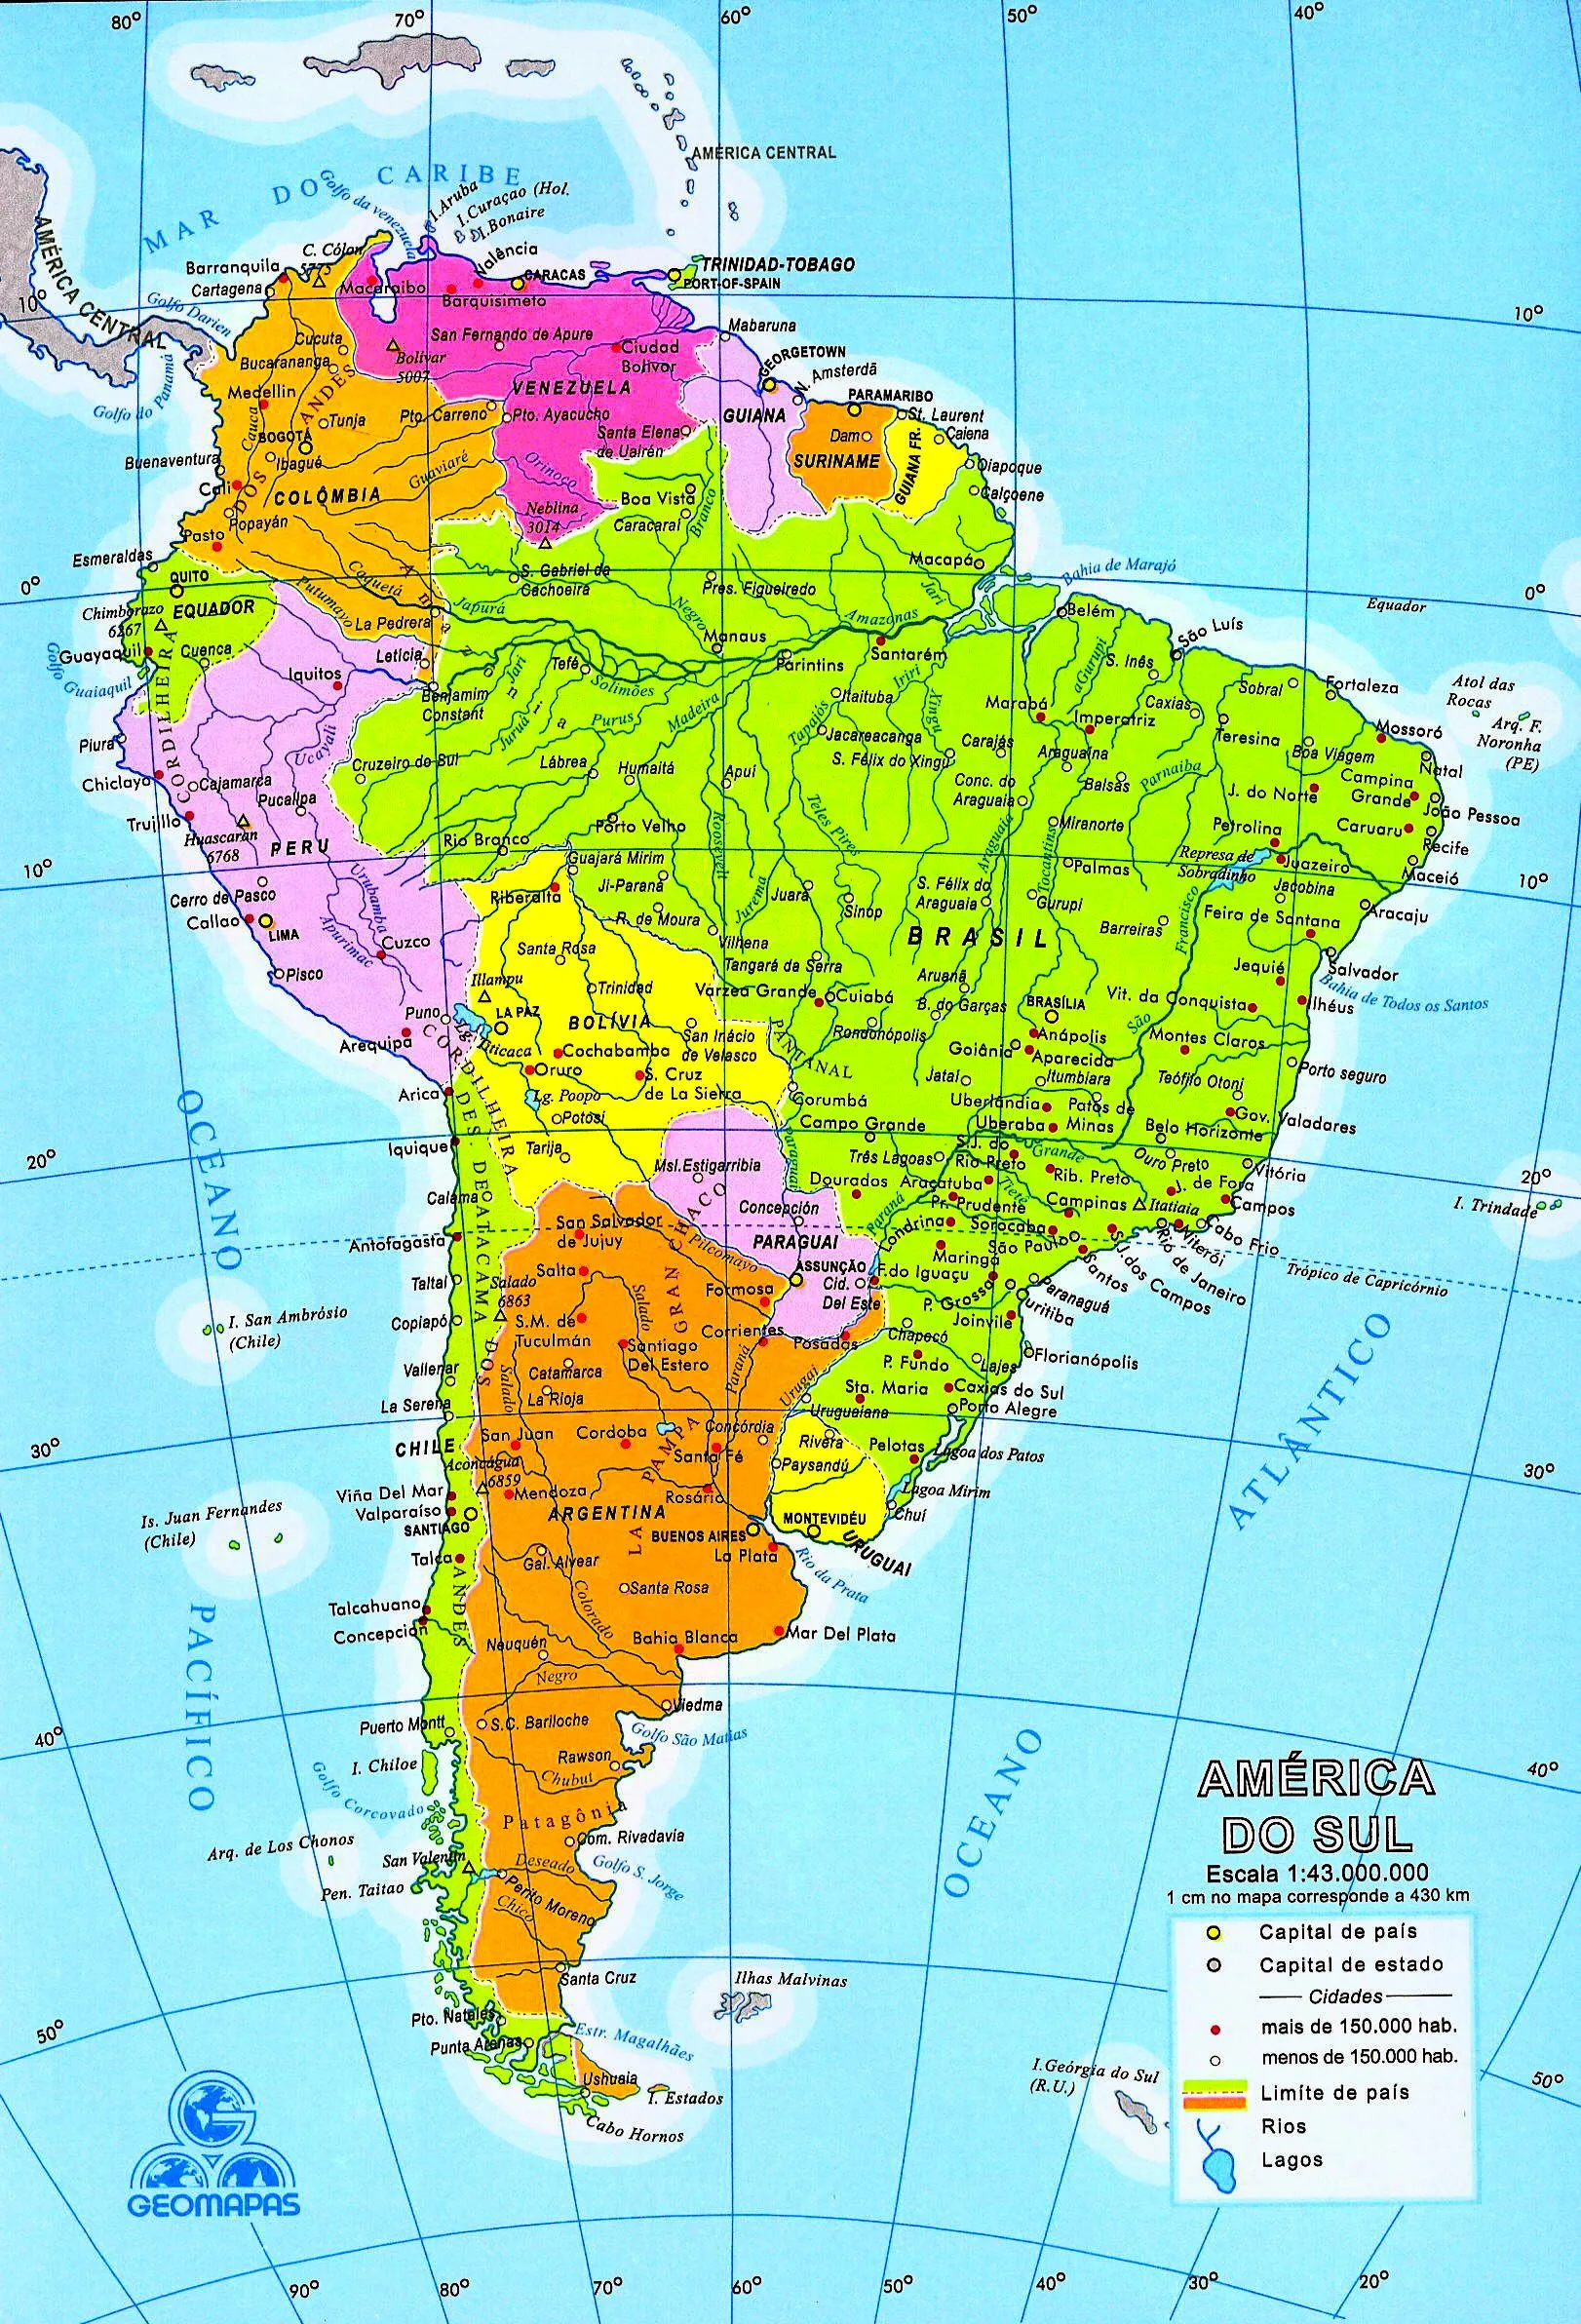 Mapa de América del Sur (Sudamérica) - mapa da América do Sul ...